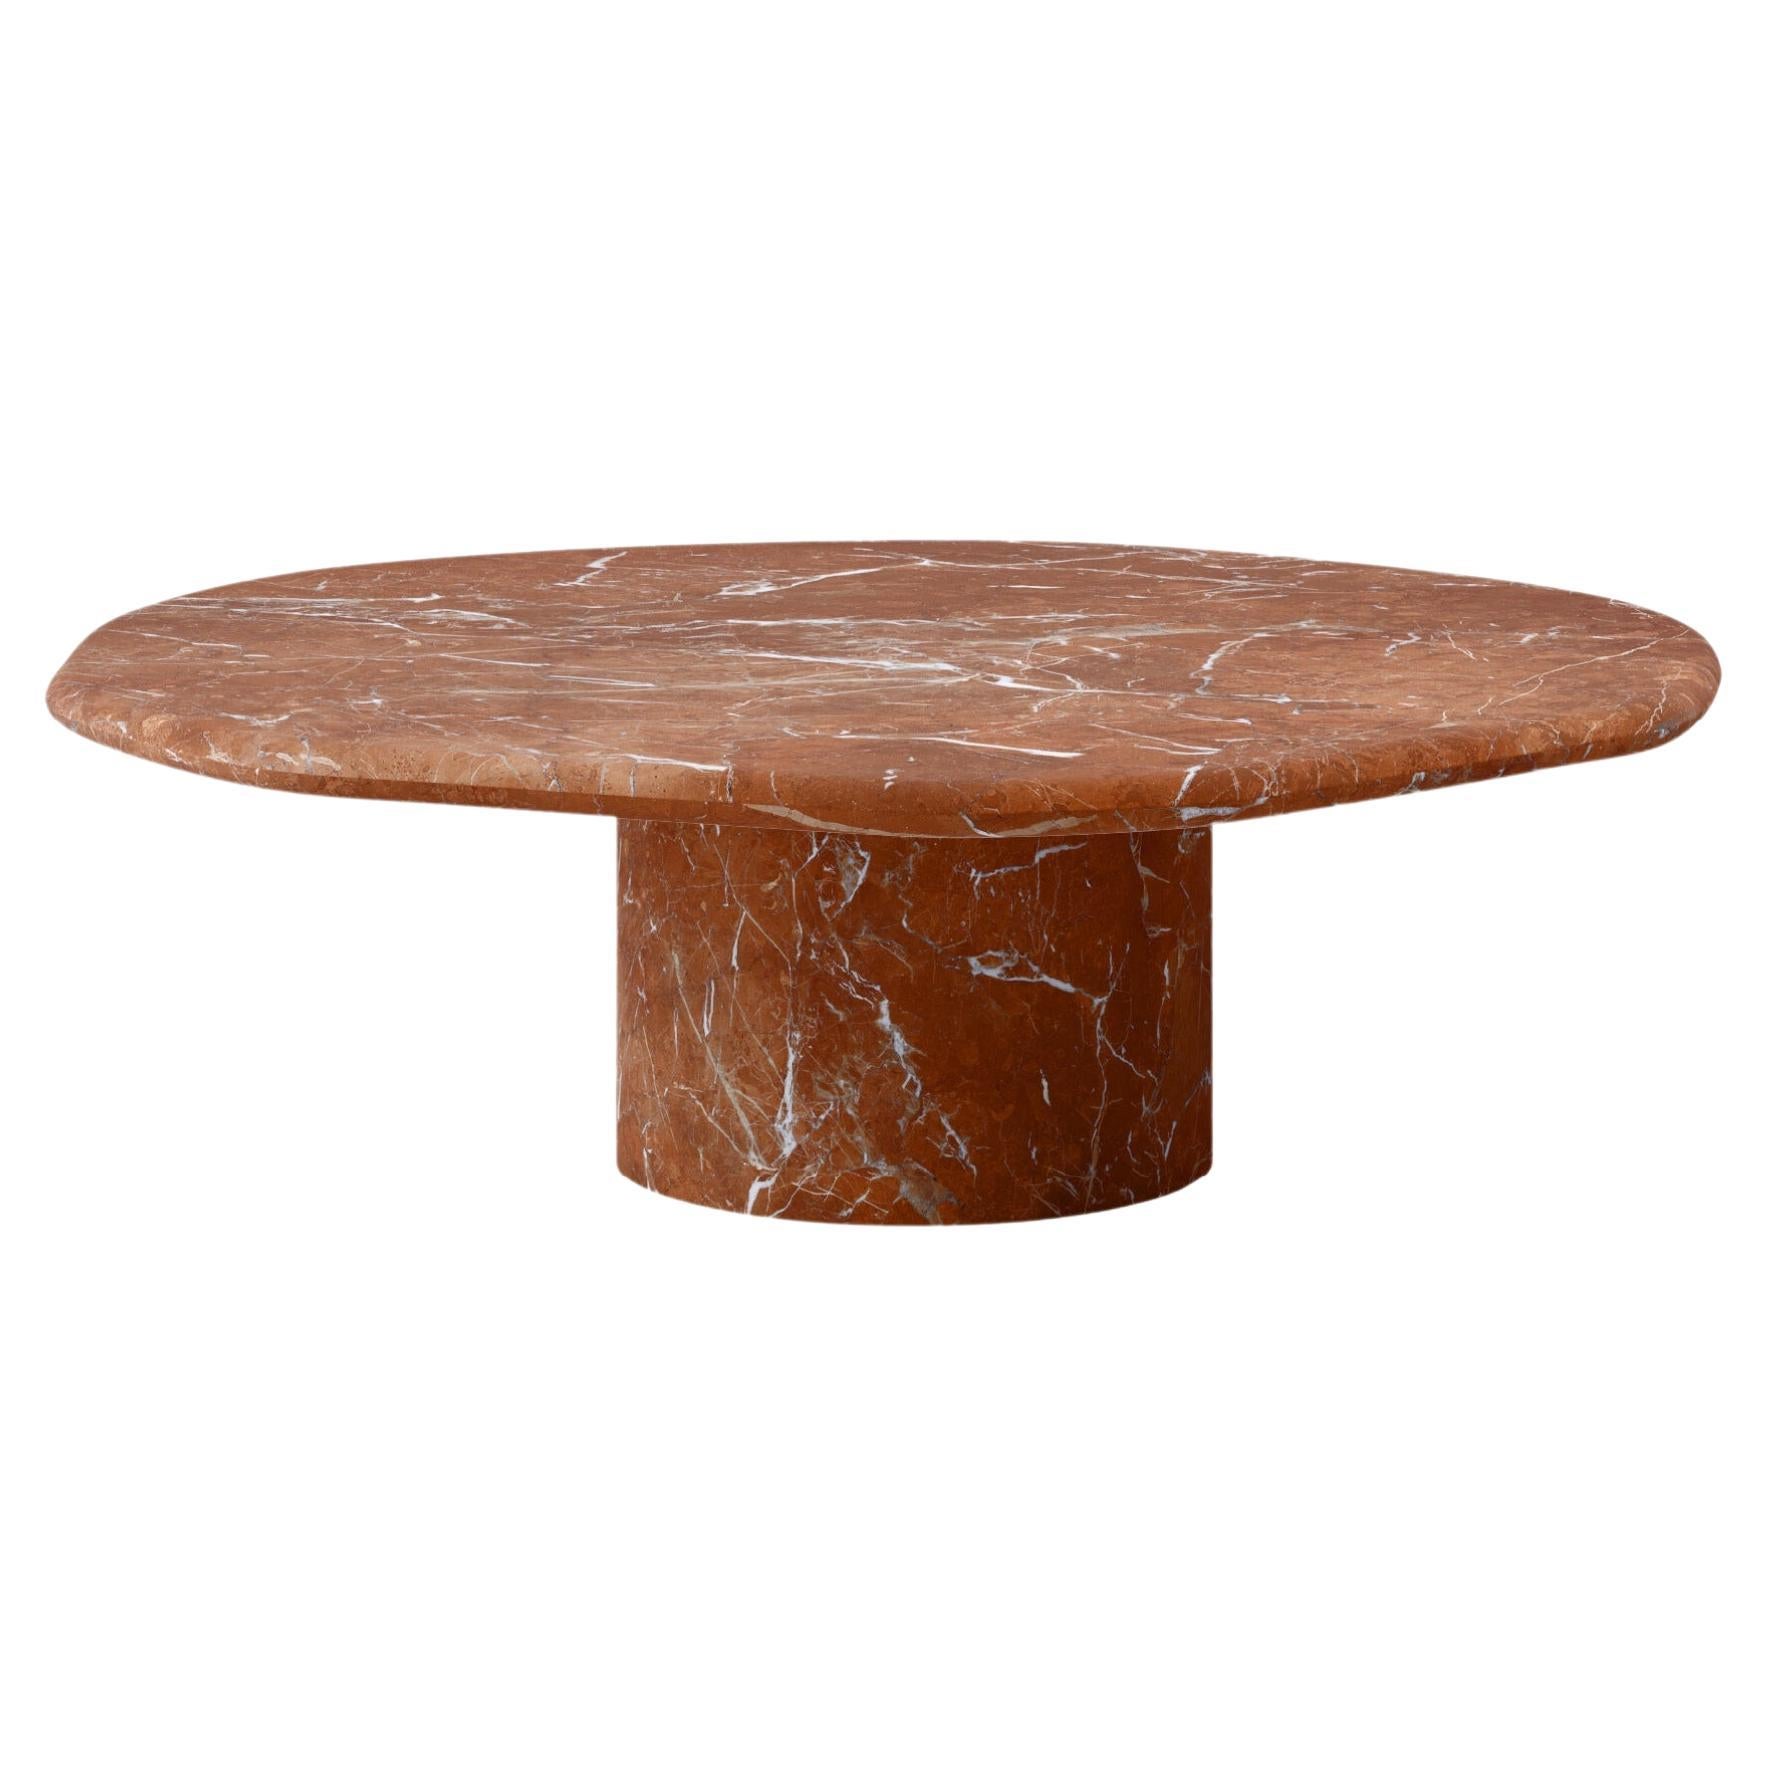 FORM(LA) Lago Round Coffee Table 60”L x 60”W x 14”H Rojo Alicante Marble For Sale